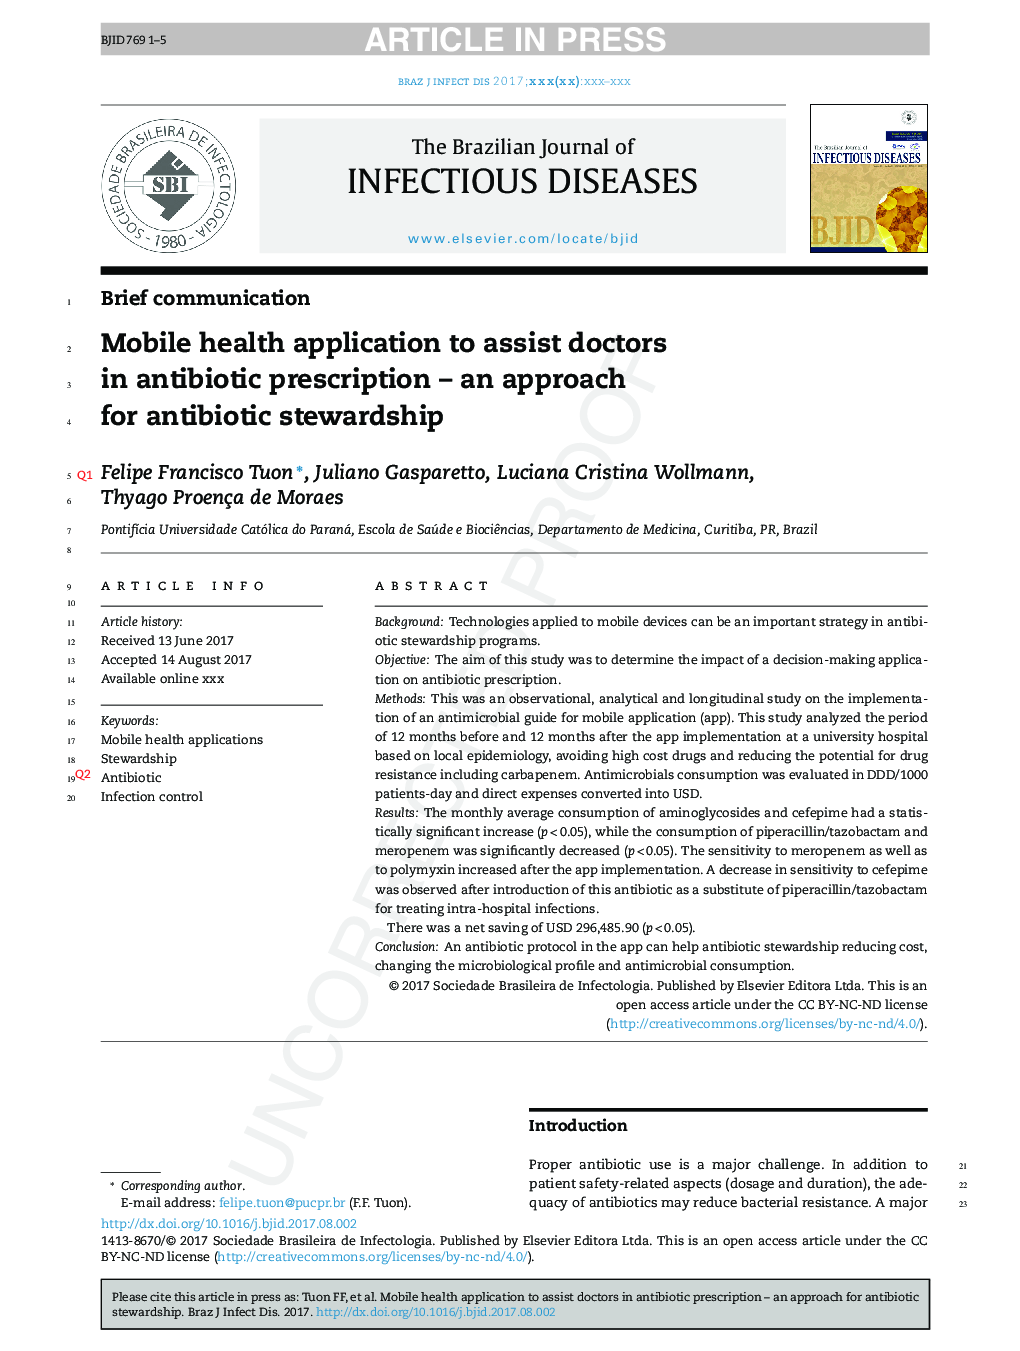 برنامه سلامت تلفن همراه برای کمک به پزشکان در نسخه آنتی بیوتیک - یک روش برای نظارت بر آنتی بیوتیک 